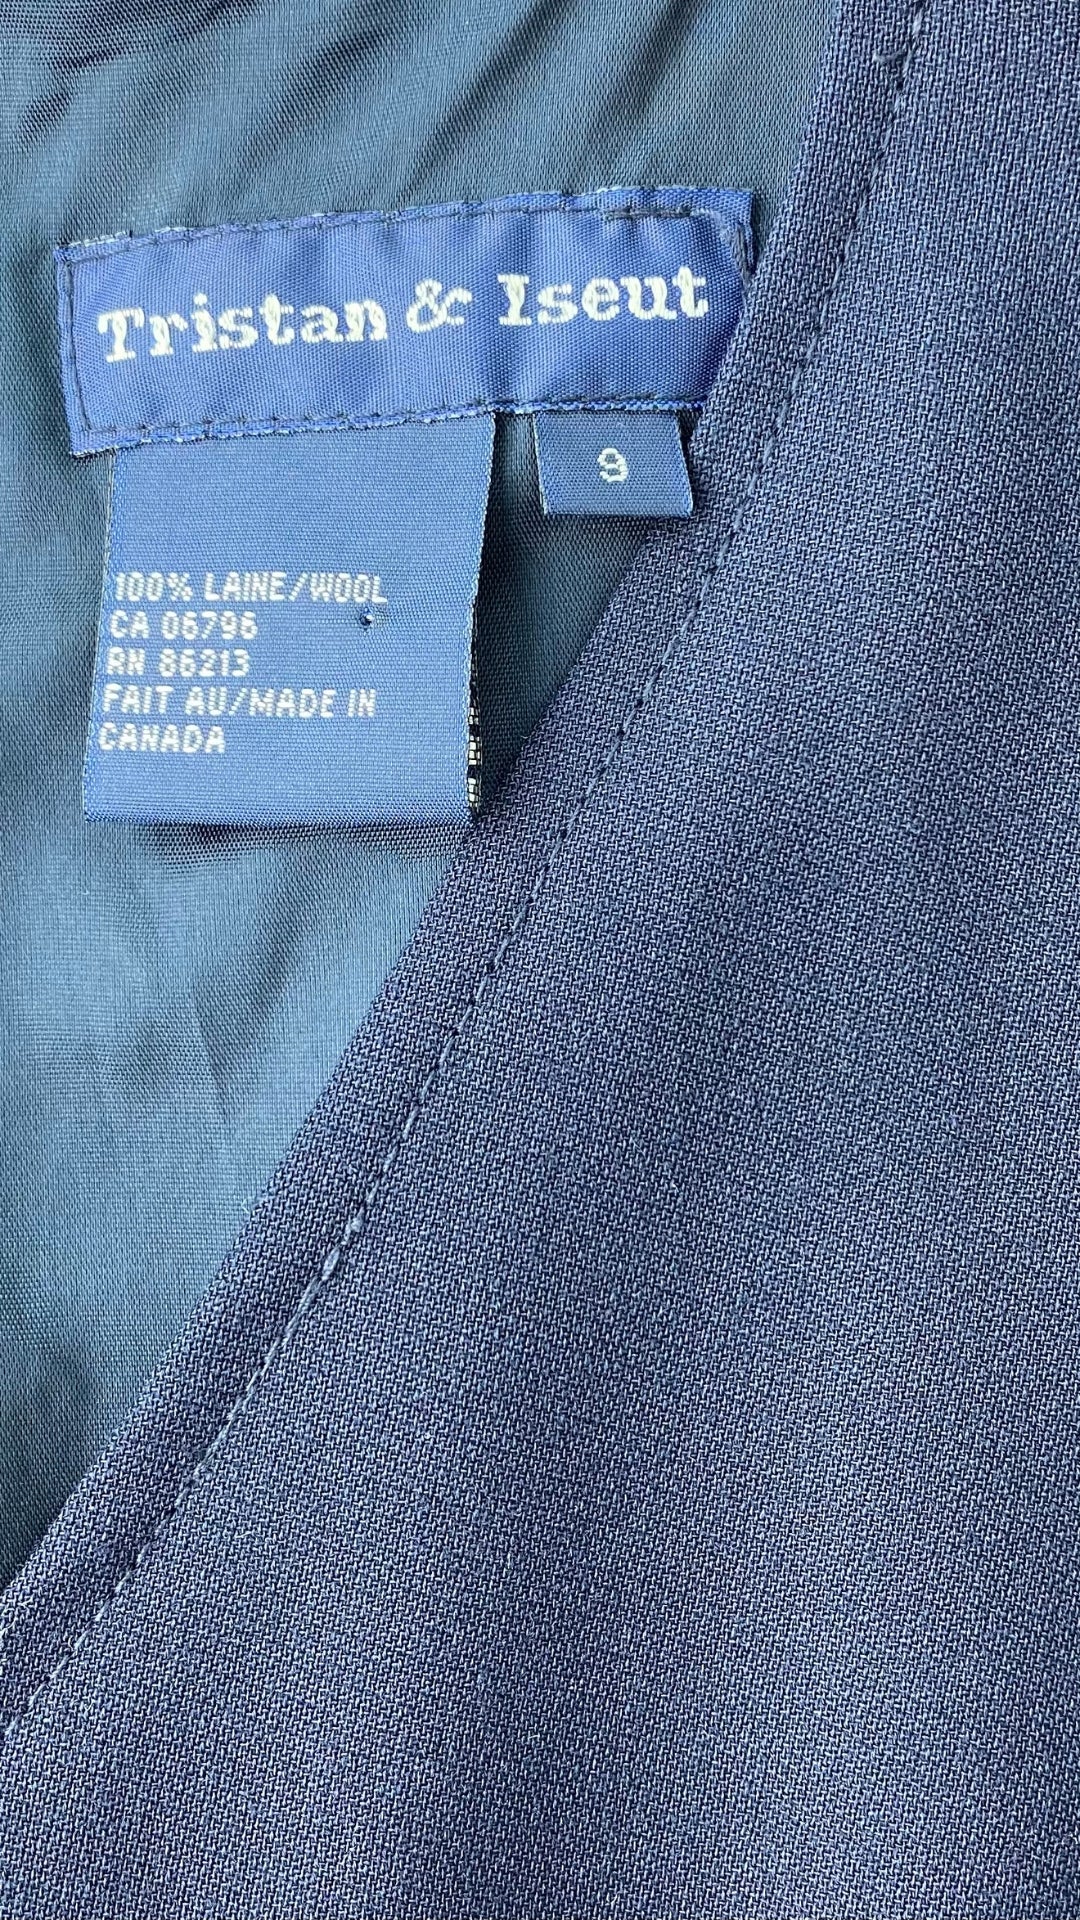 Robe classique vintage Tristan & Iseut, marine en lainage fin. Vue de la marque, composition et taille.